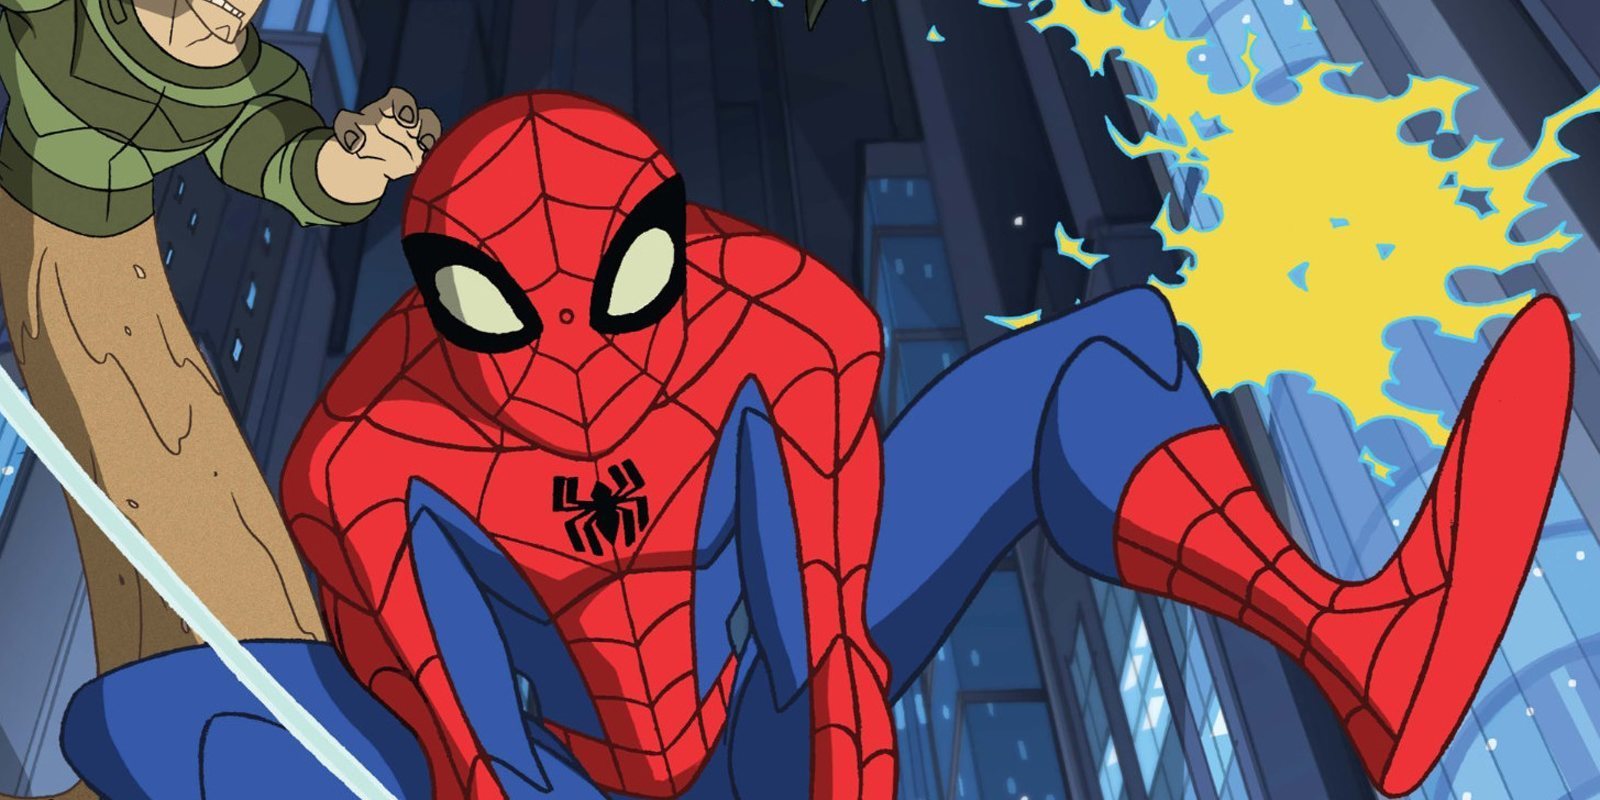 Debes ver la mejor serie de superhéroes antes de jugar 'Spider-Man'